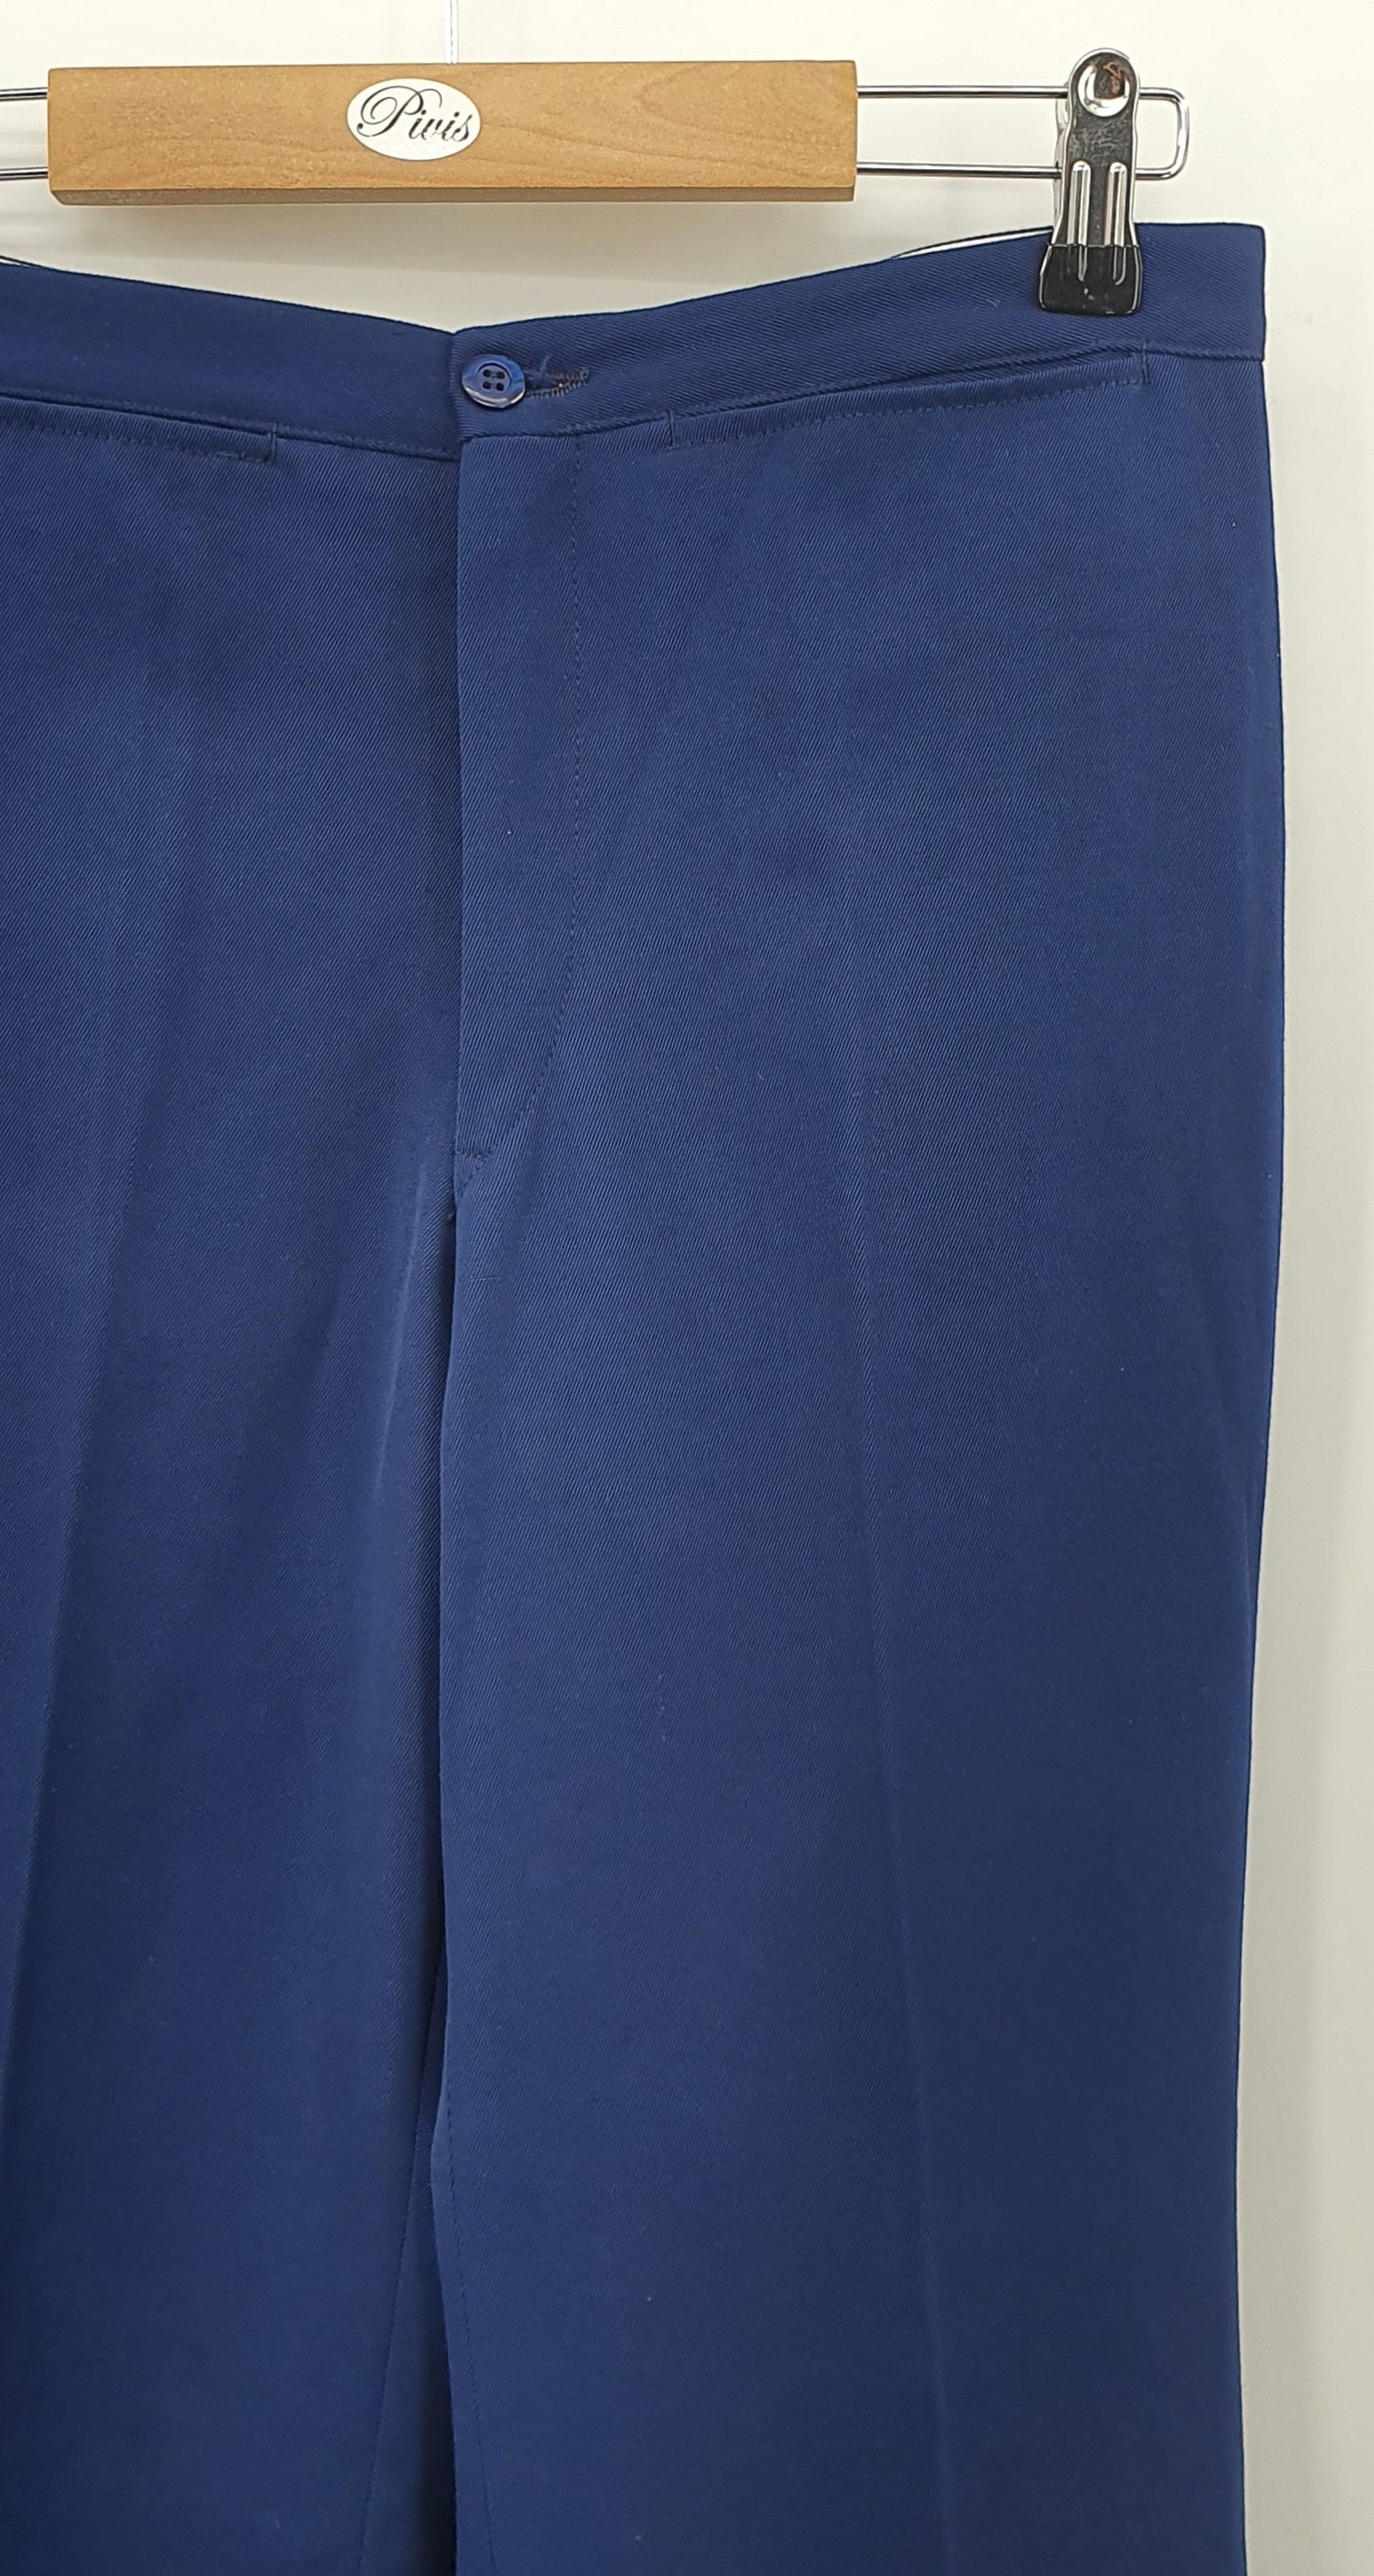 Tummansiniset leveälahkeiset housut, sis.villaa, 70-luku, vyöt.ymp. 70cm, kokoarvio 36